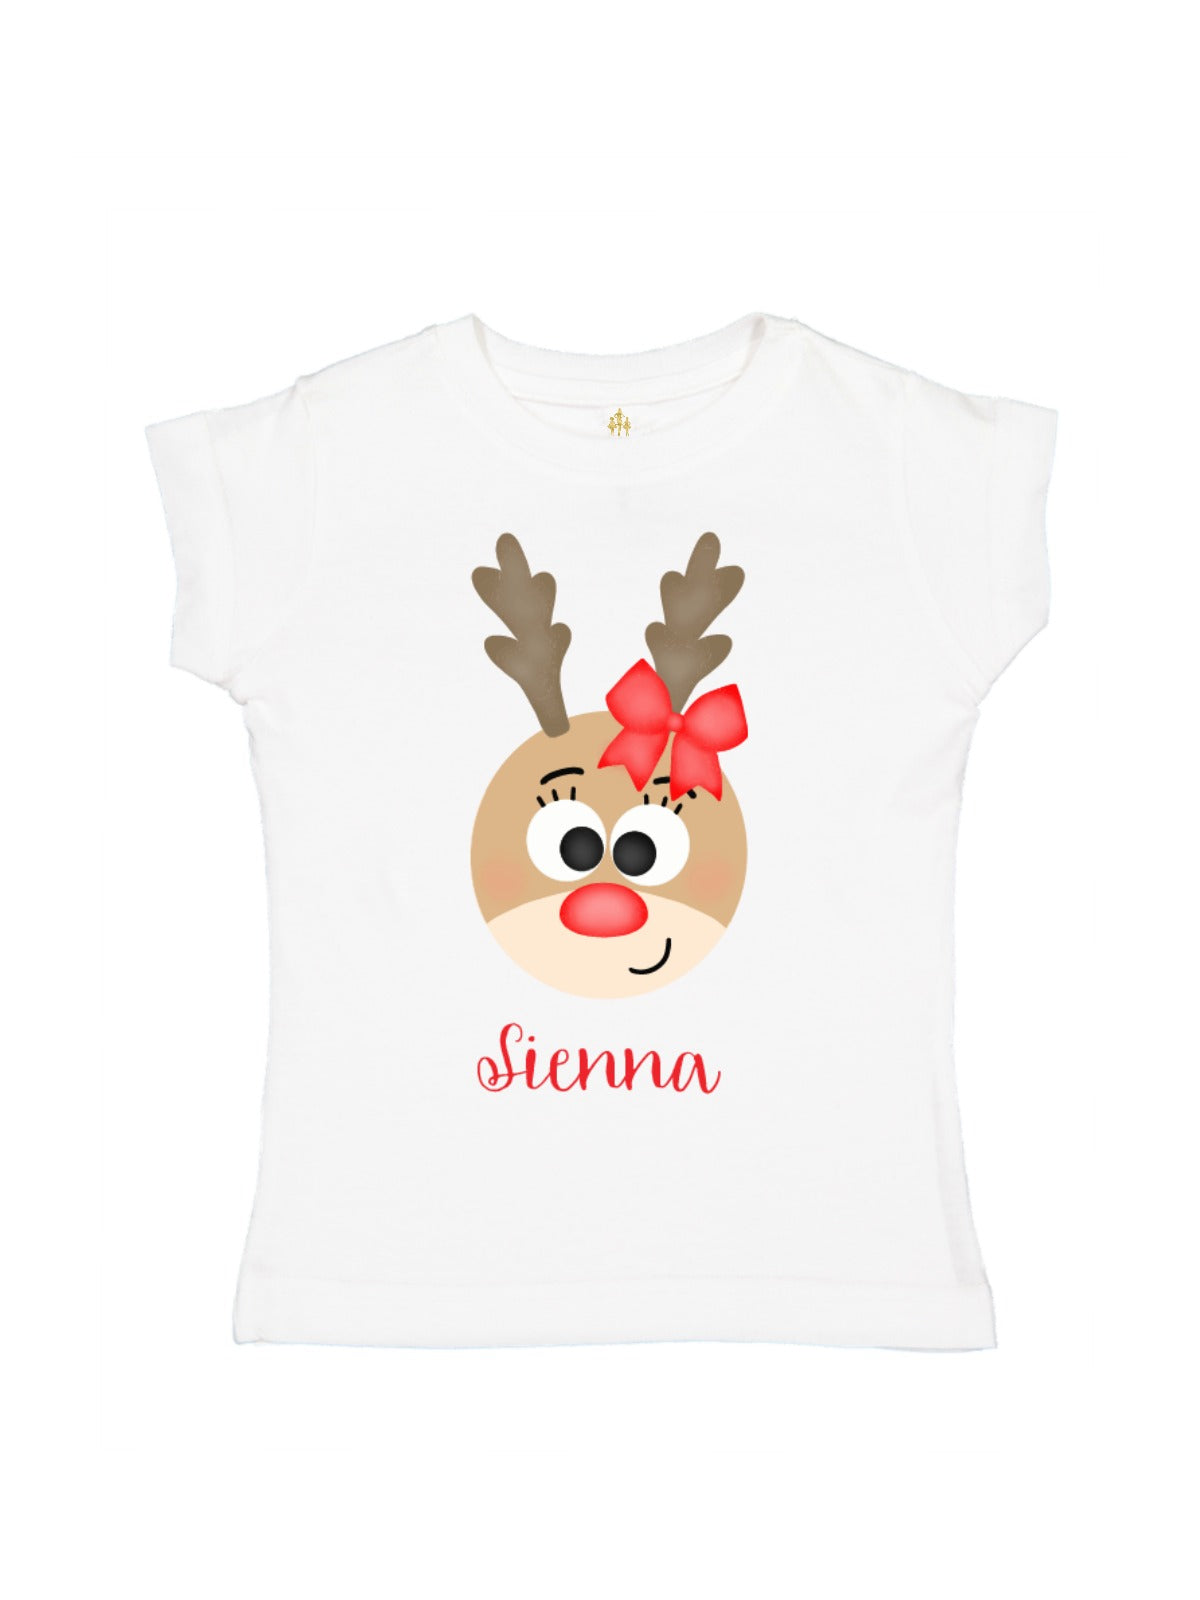 kids Christmas shirts personalized